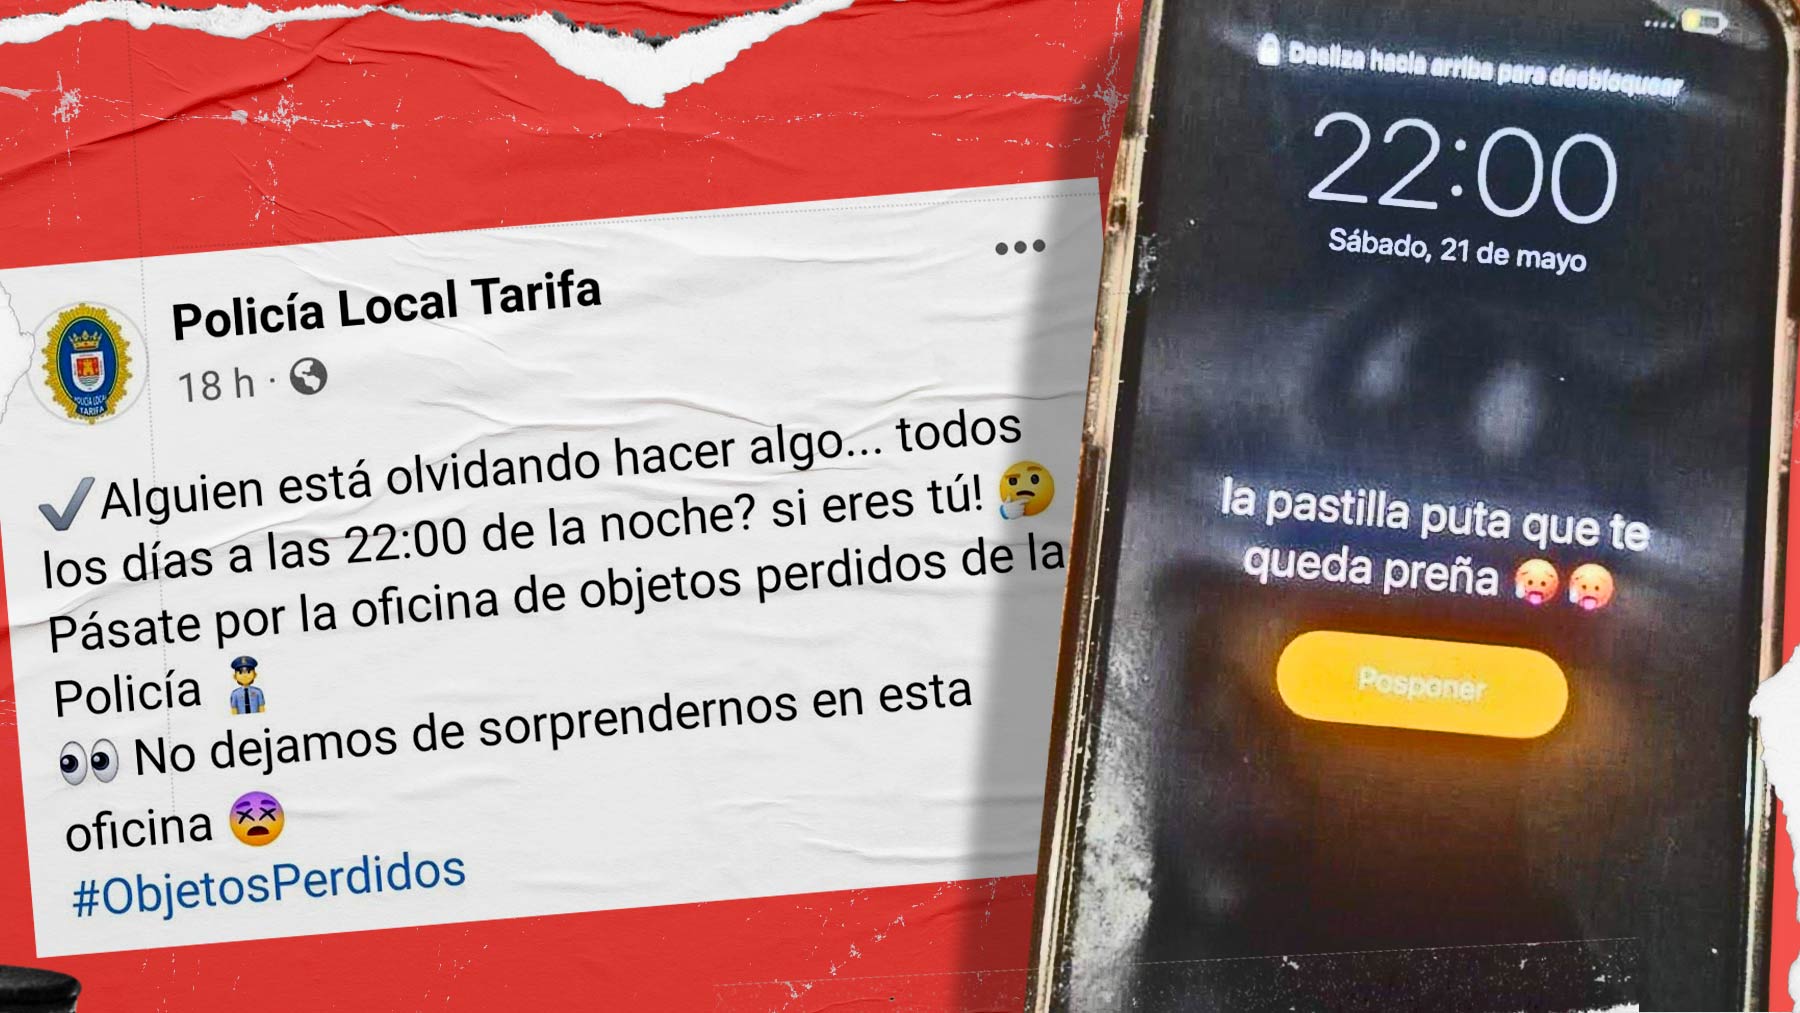 Mensaje difundido por la Policía Local de Tarifa (Cádiz) en redes sociales.